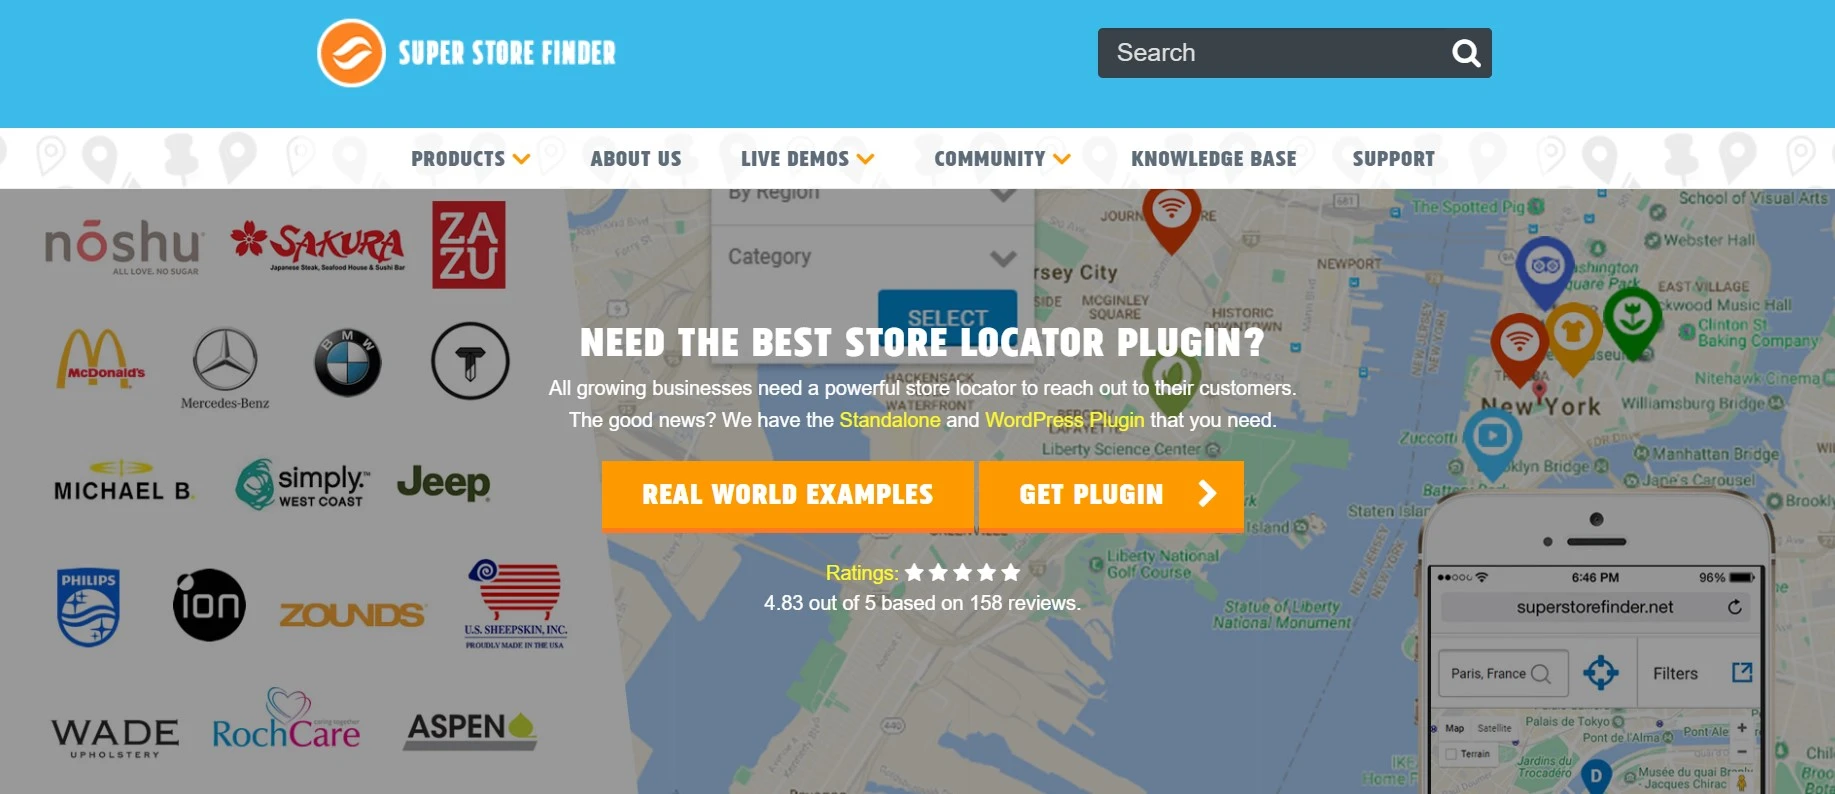 Super store finder best store locator plugin